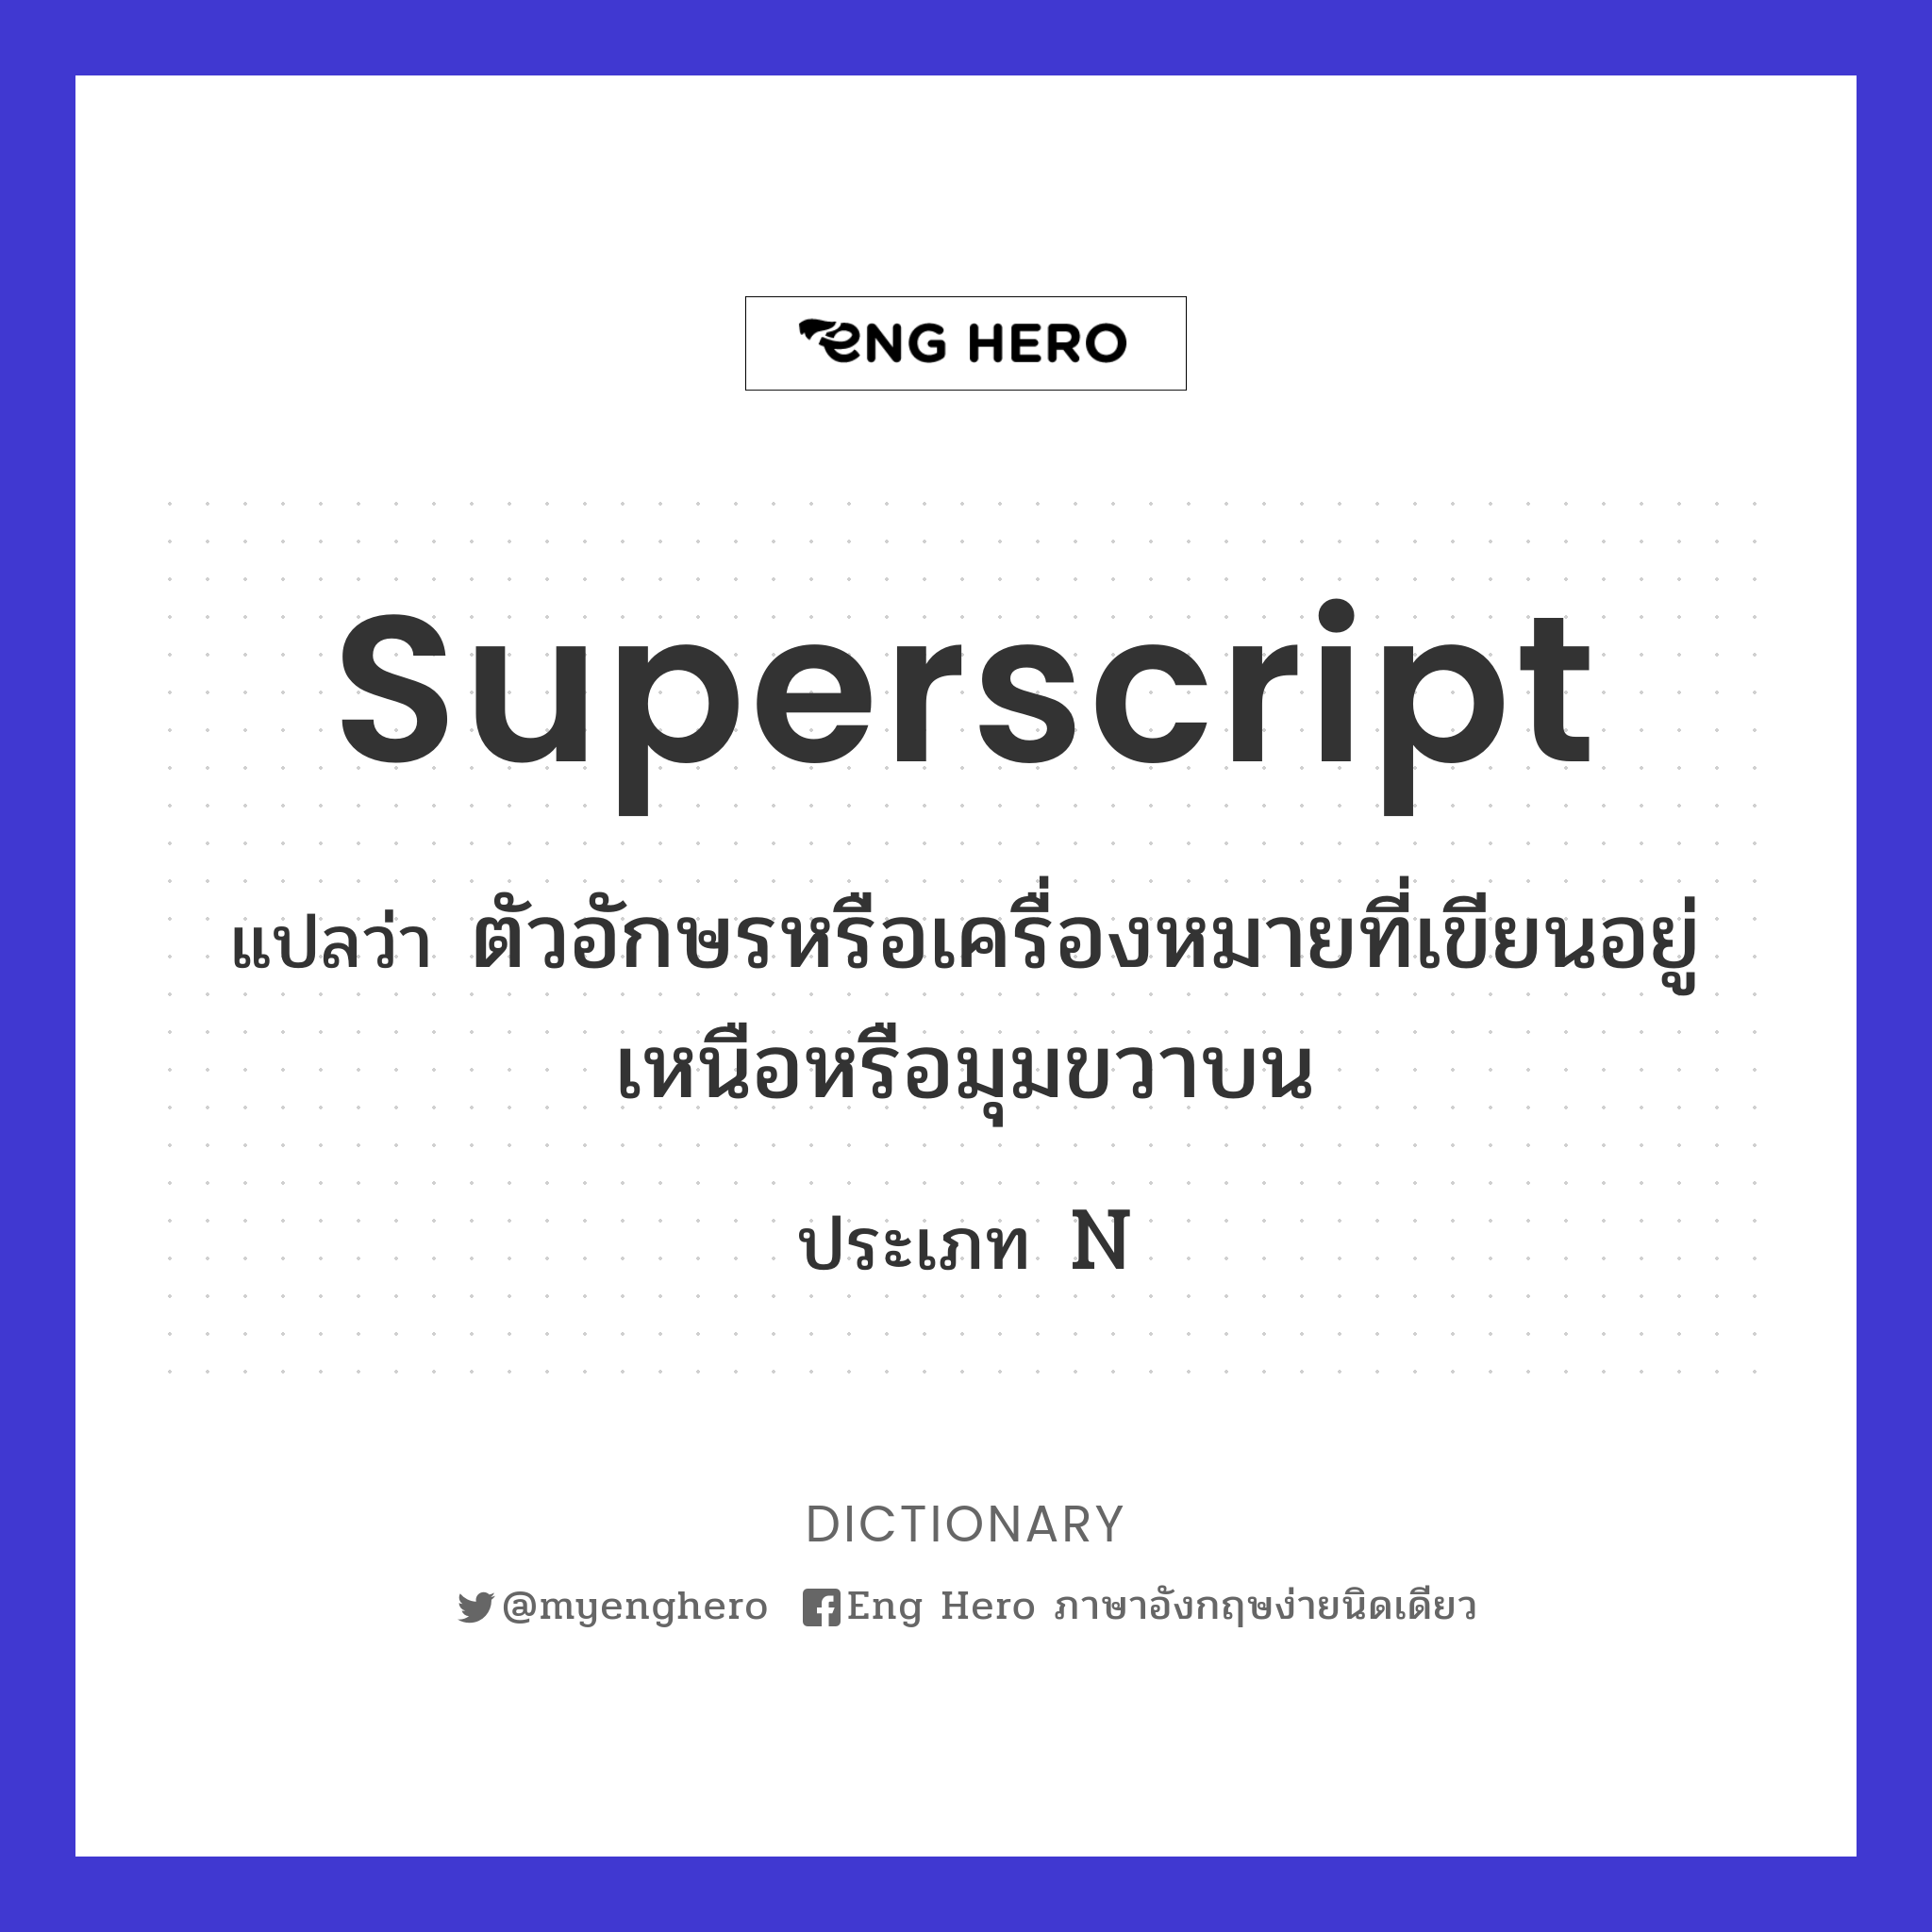 superscript